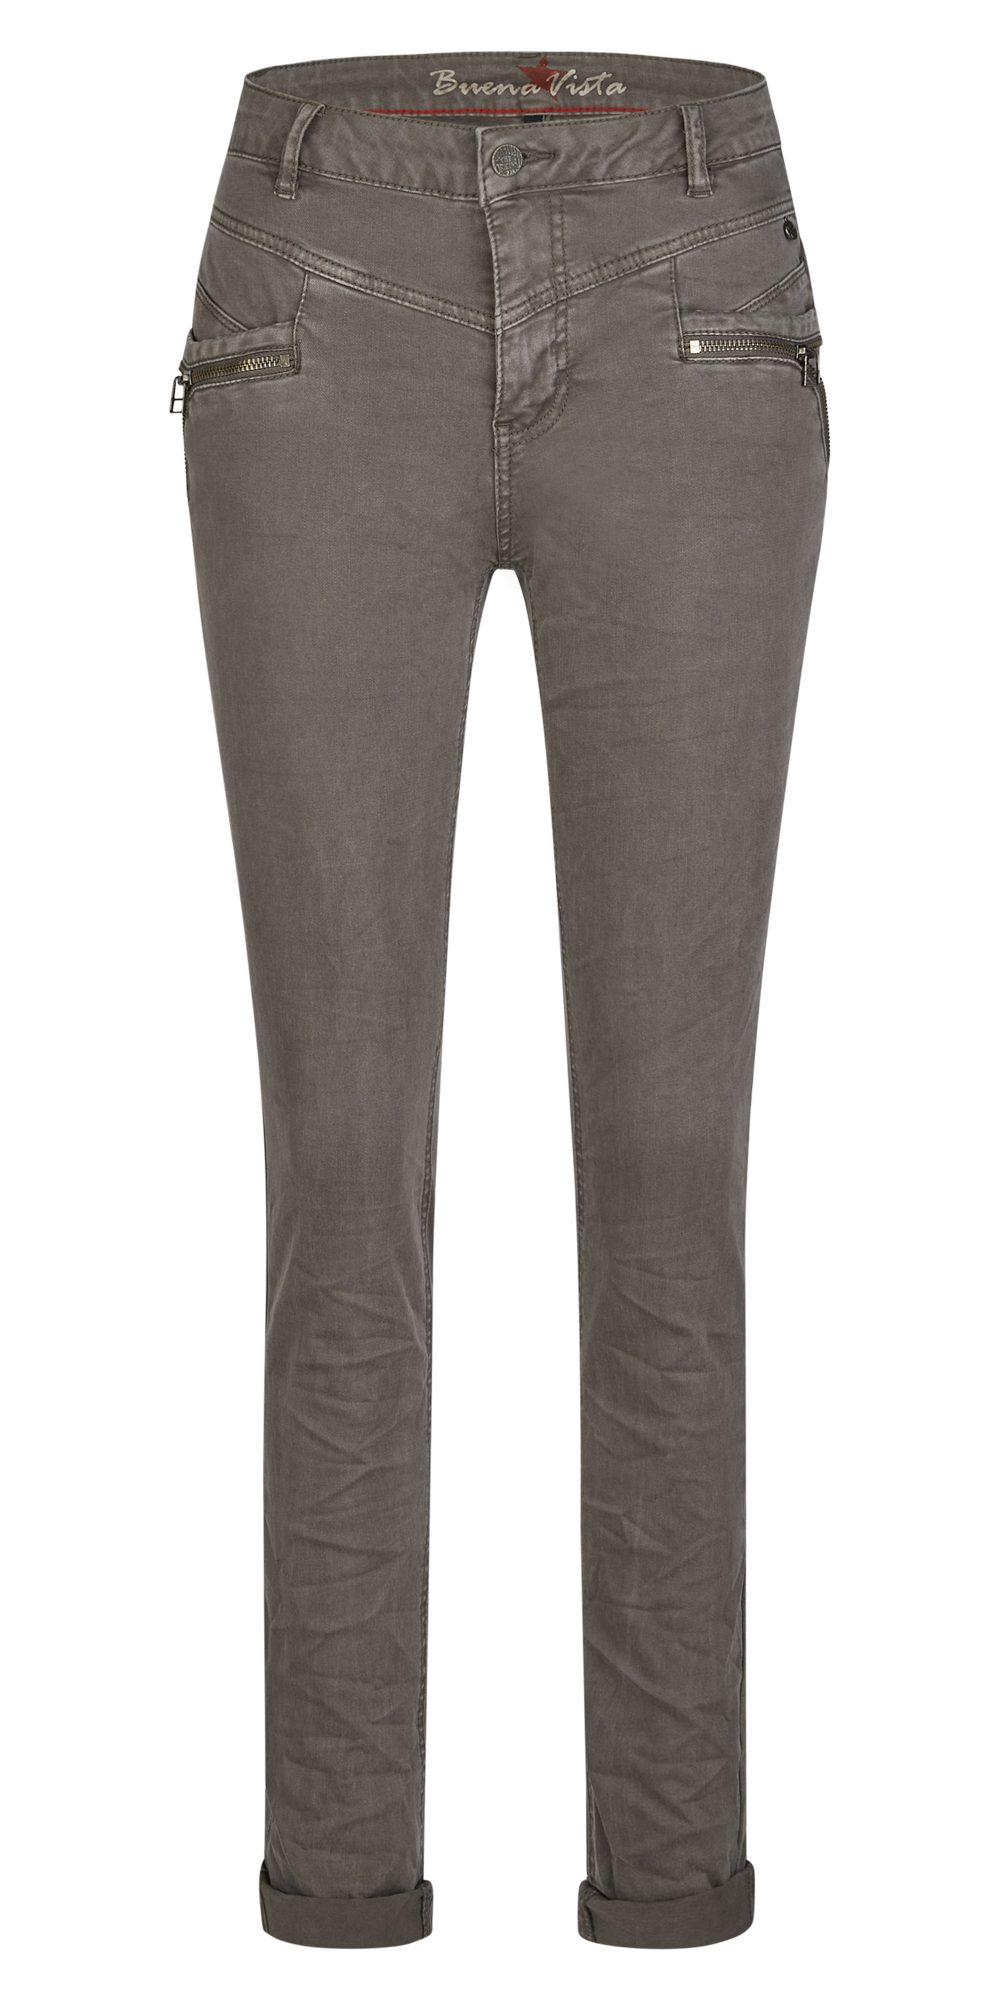 Buena Vista Bequeme Jeans 2986 dark grey